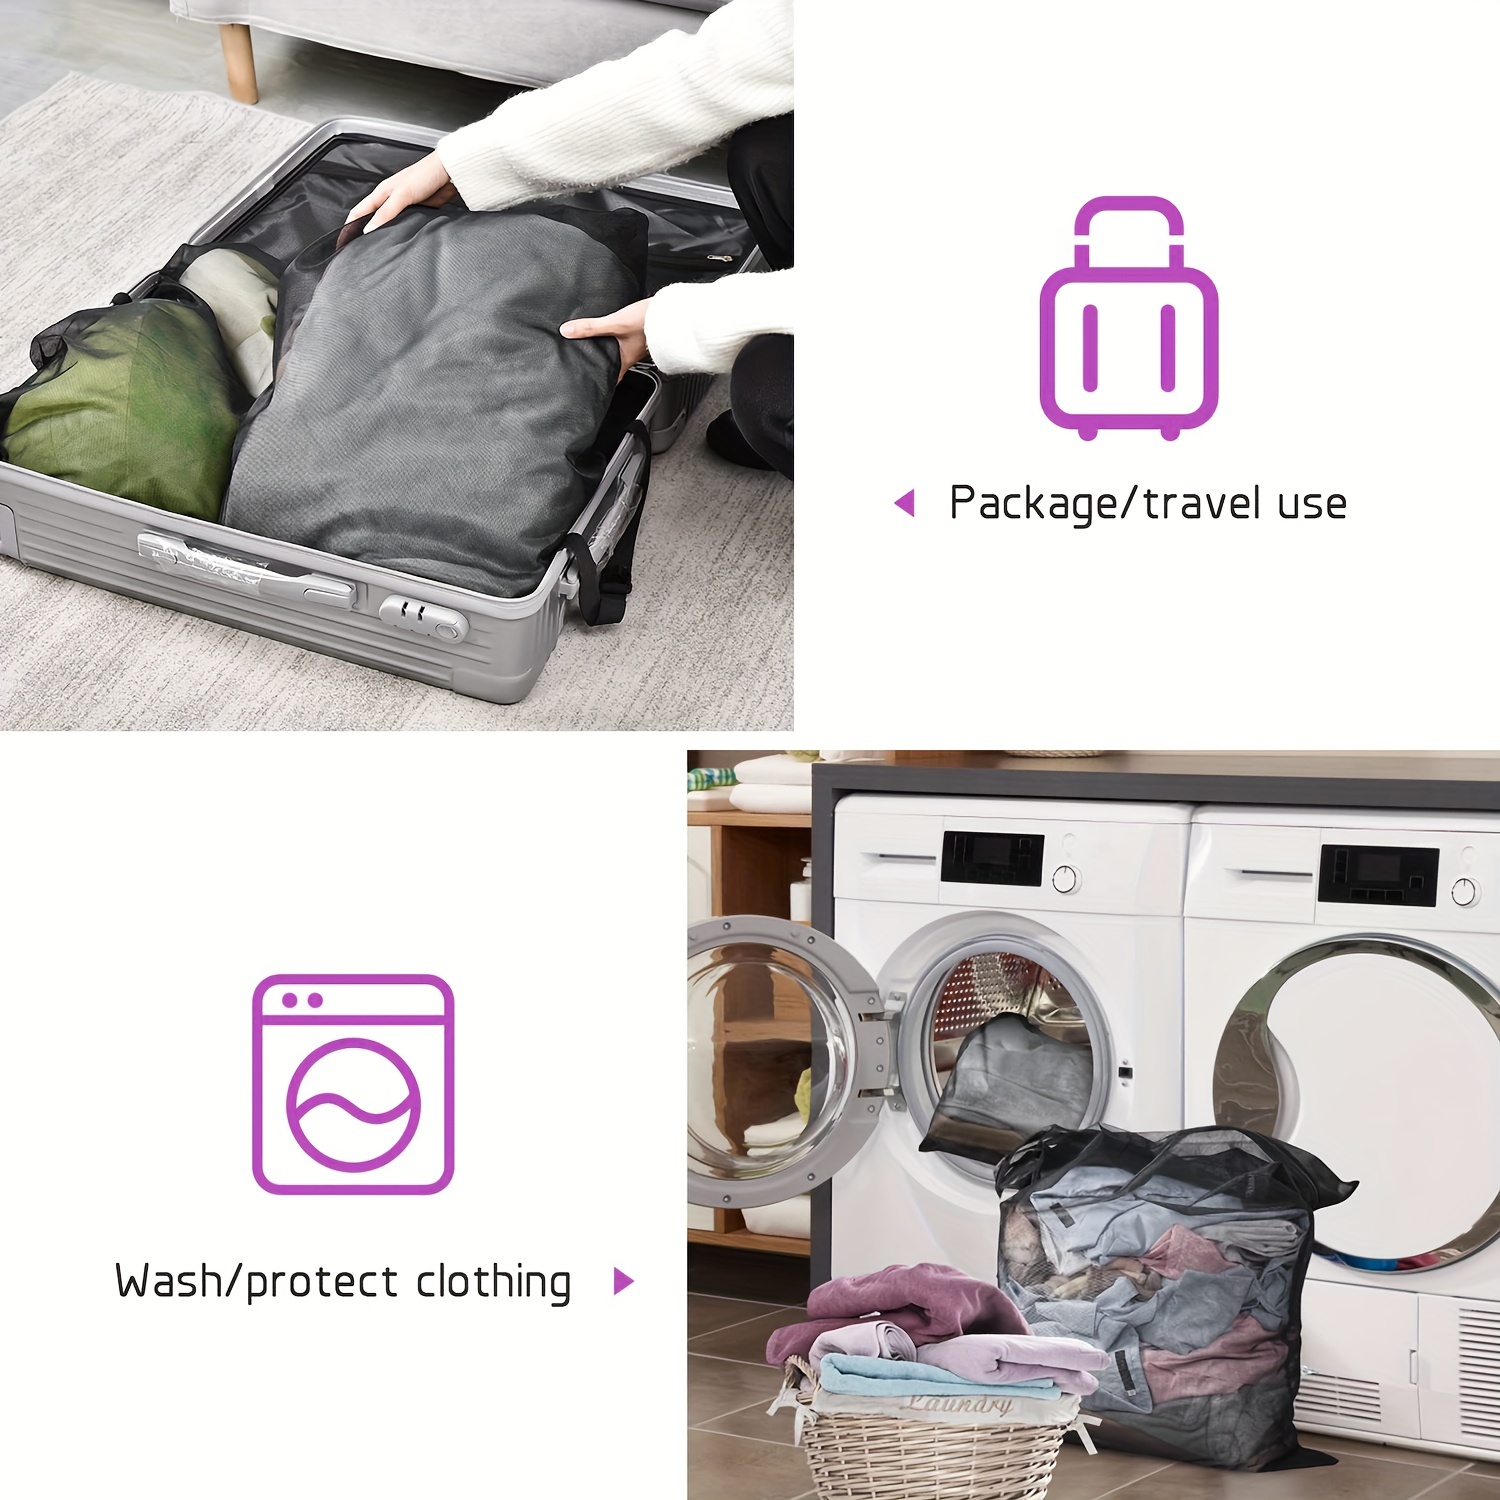 Laundry Bag, Mesh Laundry Washing Bag, 2 Pack Reusable Laundry Net, Laundry  Net Bags Cloth Laundry Bags, Mesh Washing Machine Laundry Bags With Zipper